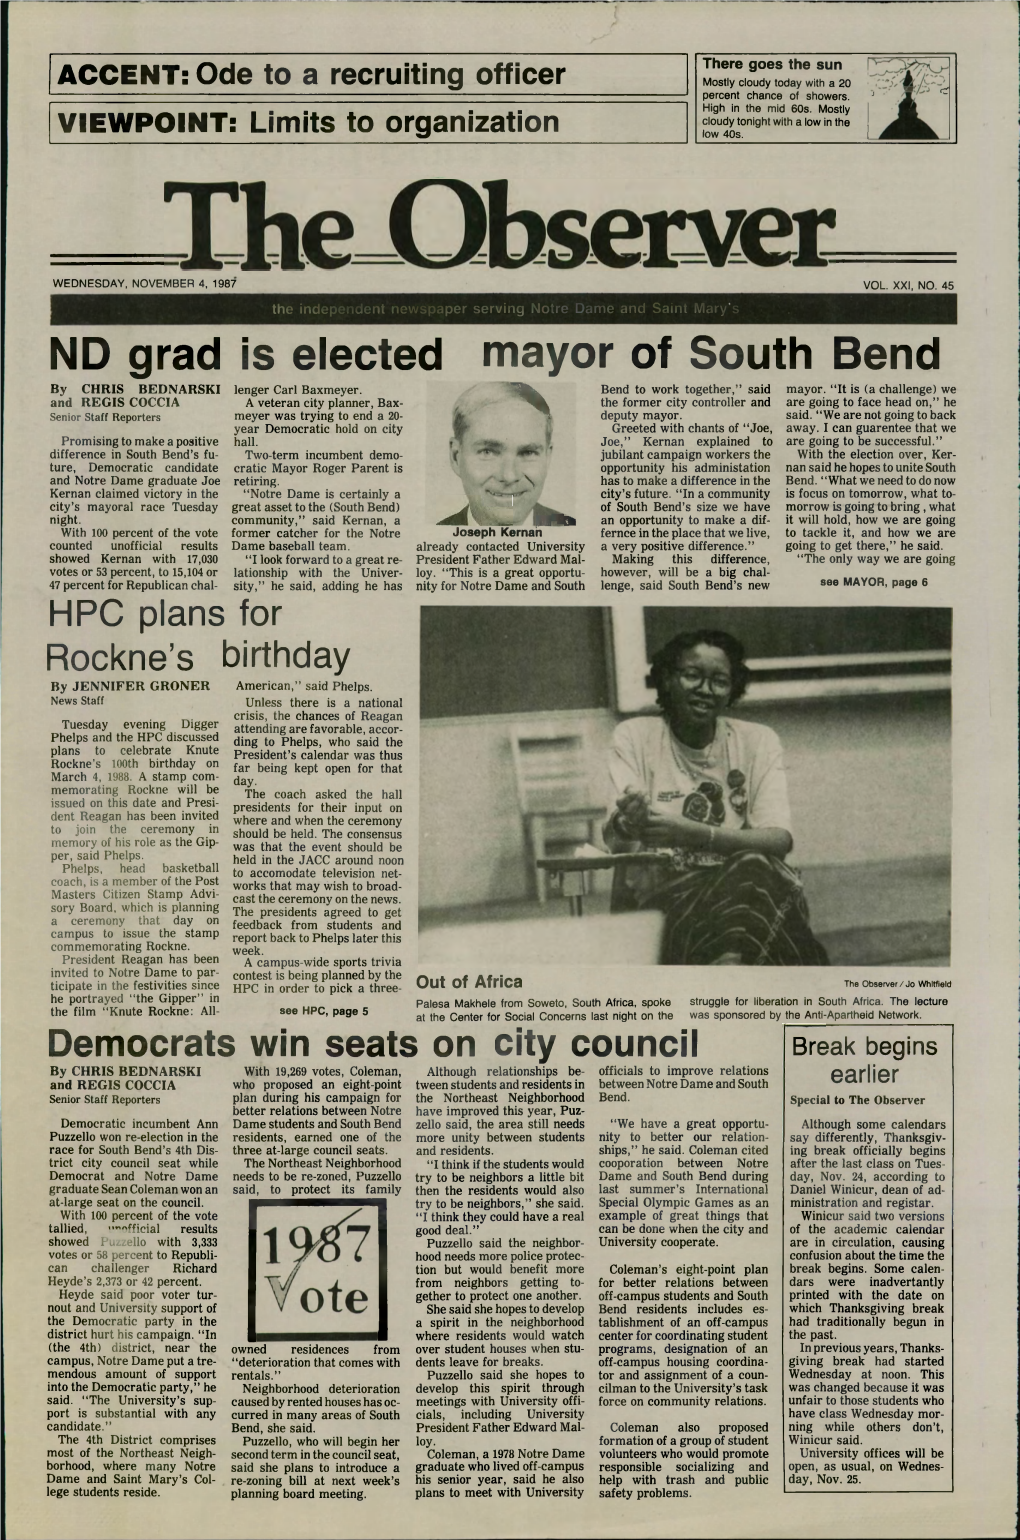 ND Grad Is Elected Mayor of South Bend by CHRIS BEDNARSKI Lenger Carl Baxmeyer